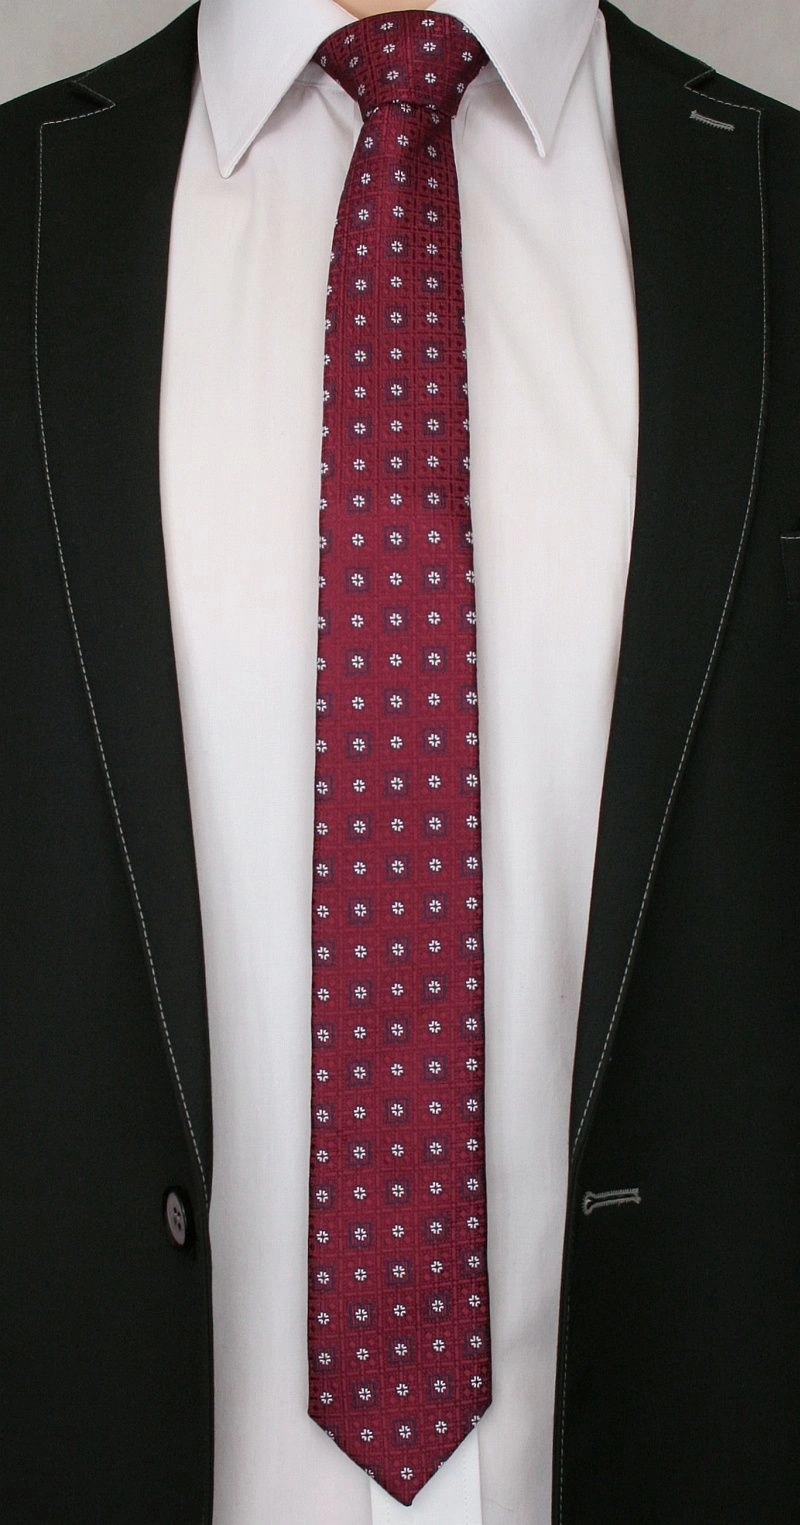 Bordowy Elegancki Krawat Męski w Małe Kwiatki -ALTIES- 6 cm, Motyw Florystyczny